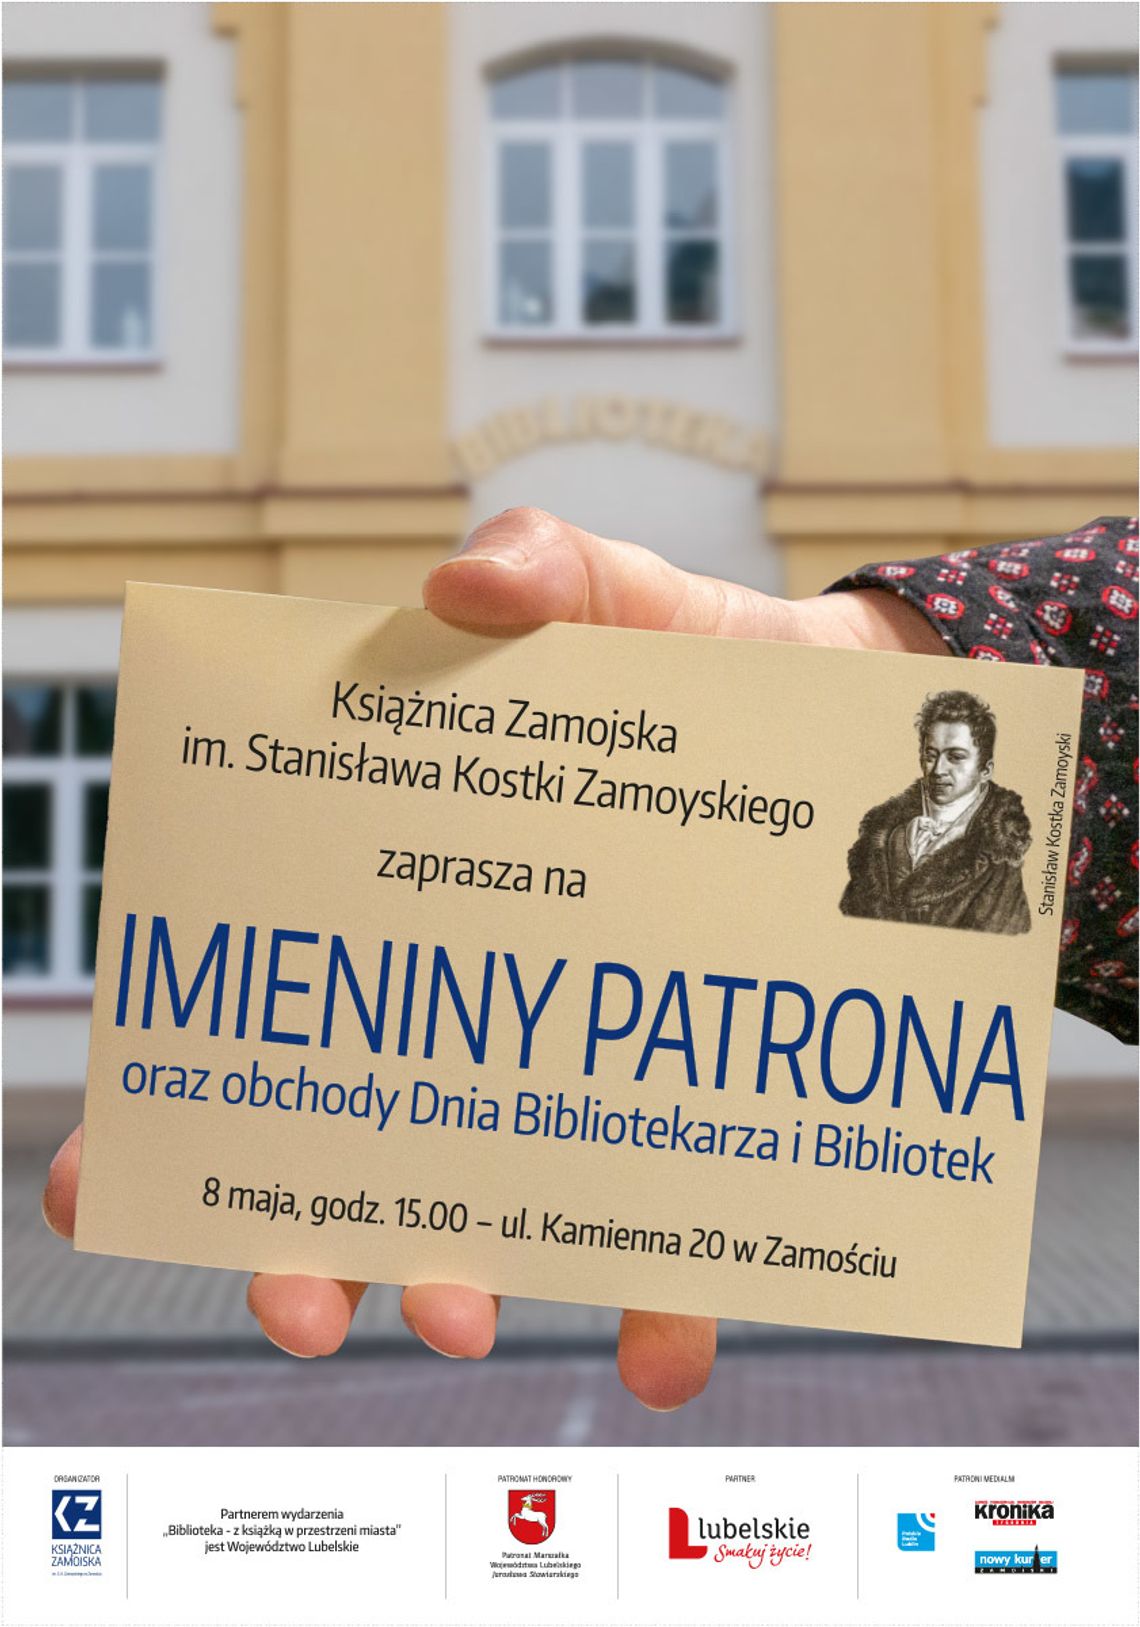 8 maja w placówce Książnicy Zamojskiej przy ul. Kamiennej 20 odbędą się Imieniny Patrona, połączone z obchodami Dnia Bibliotekarza i Bibliotek.